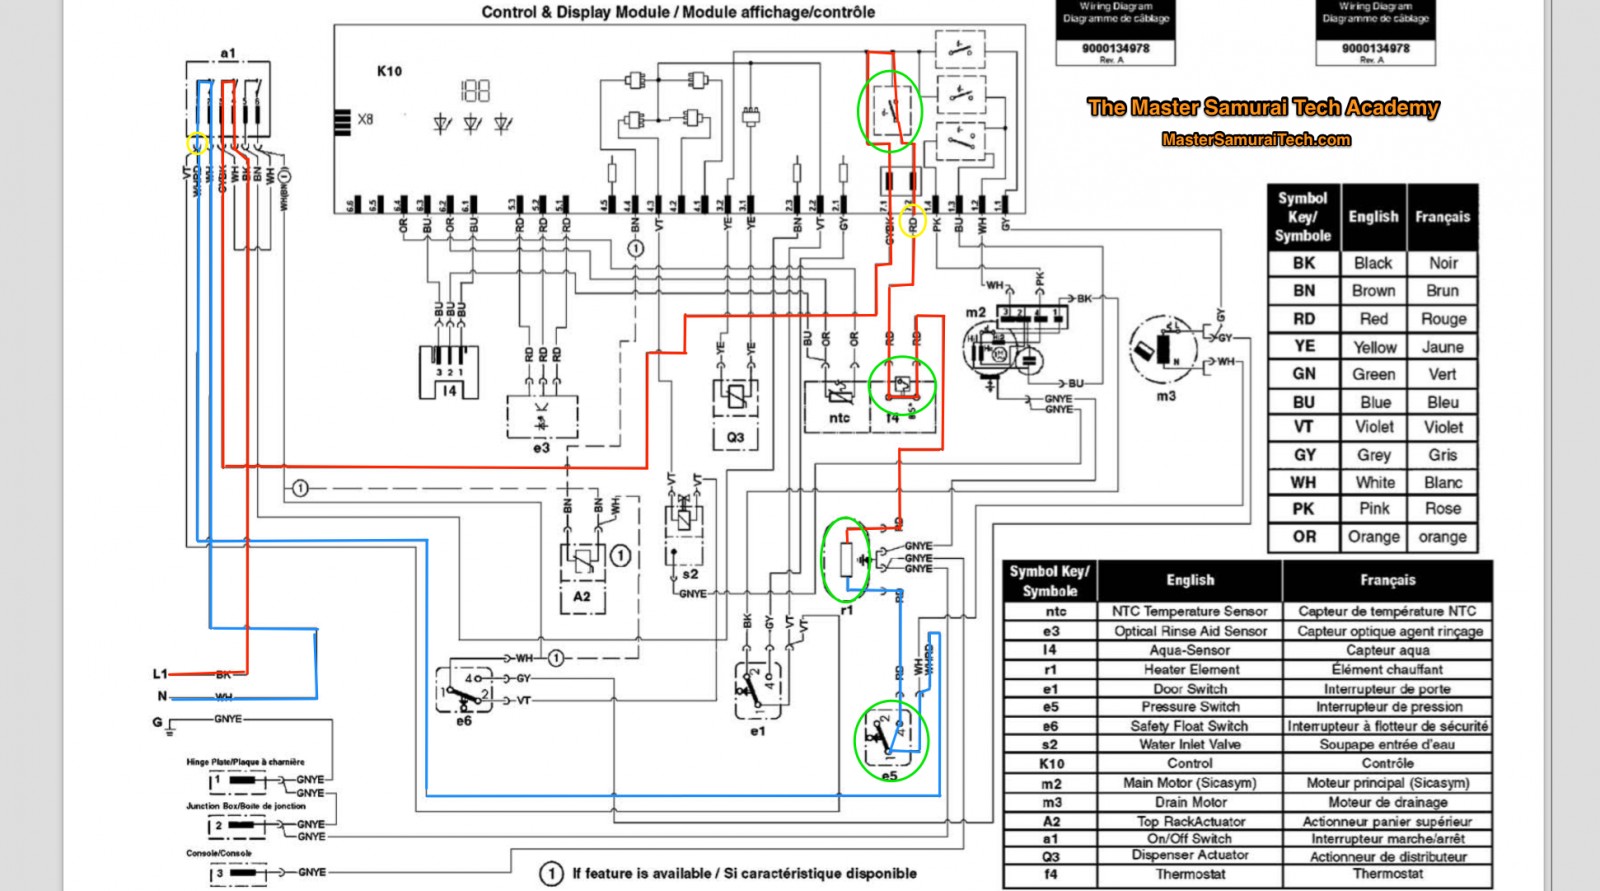 Bosche Dishwasher Wiring Schematic Bosch Dishwasher Circuit Board Of Bosche Dishwasher Wiring Schematic